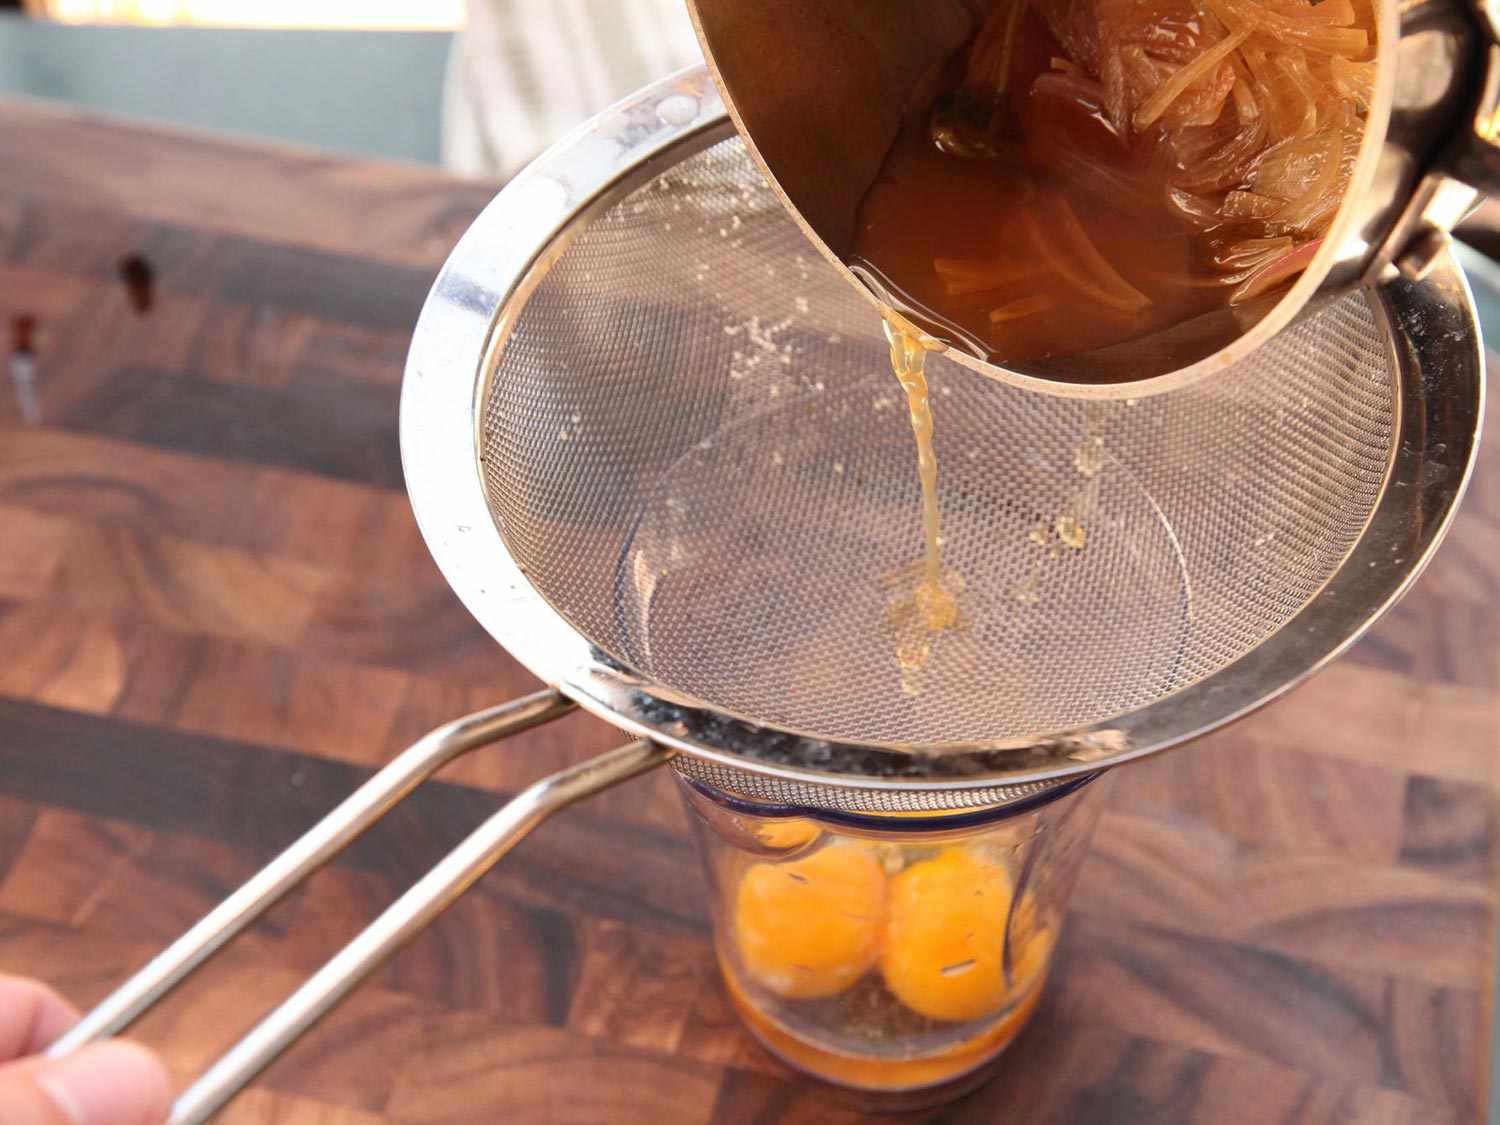 用滤网将醋倒入蛋黄罐中，制作蛋黄酱